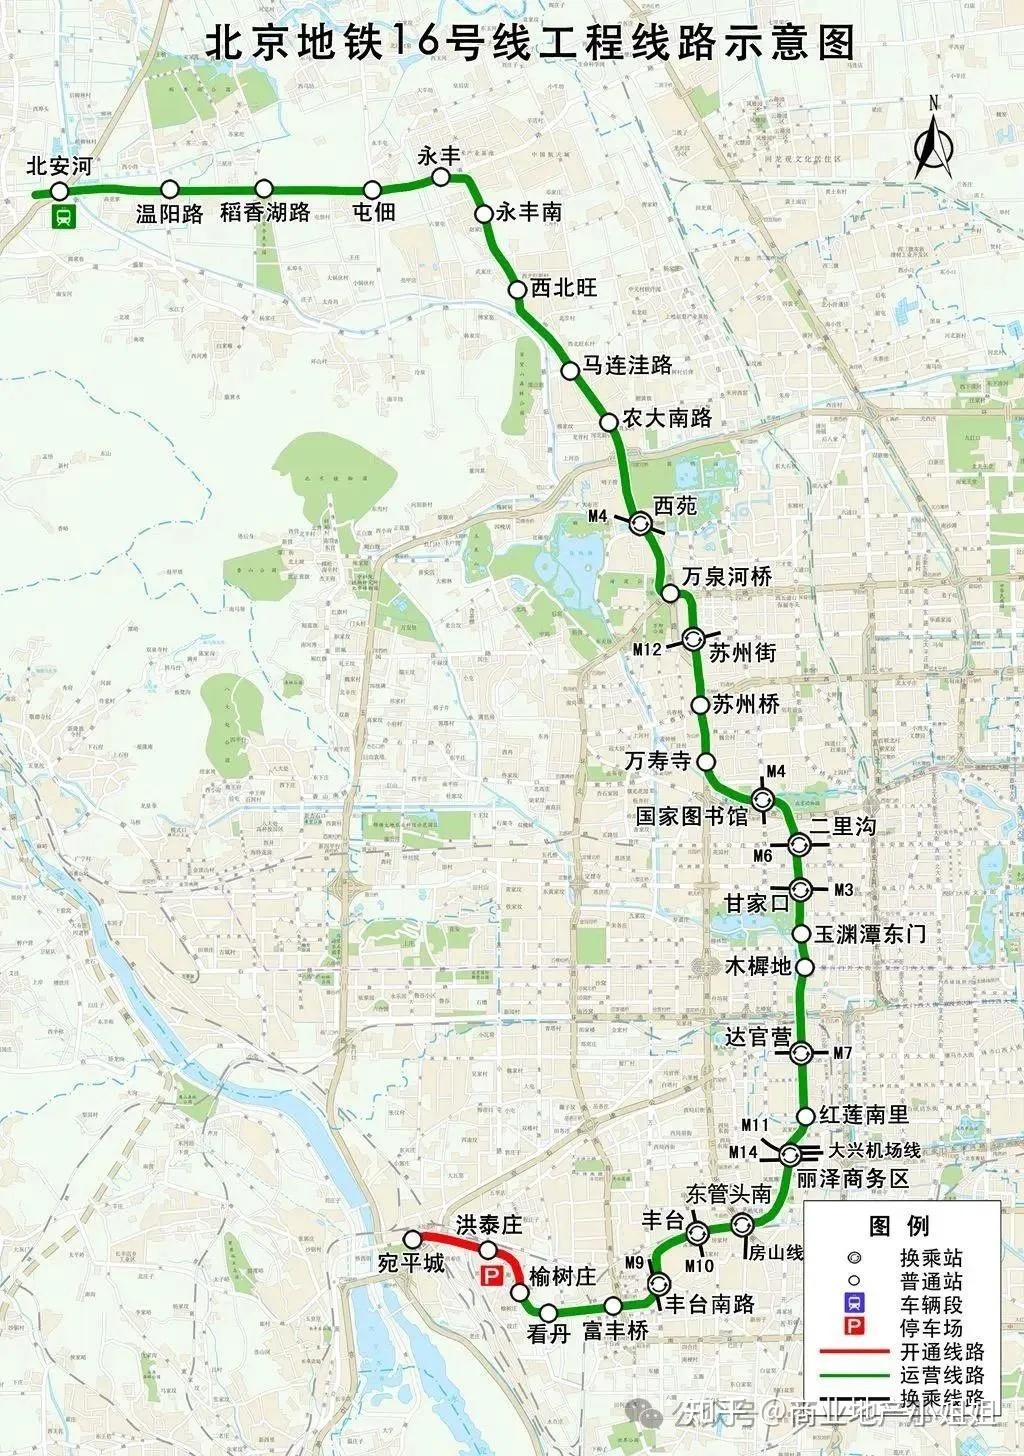 m101线一期等两条三期建设规划线路全面开工:1号线支线(青龙湖东